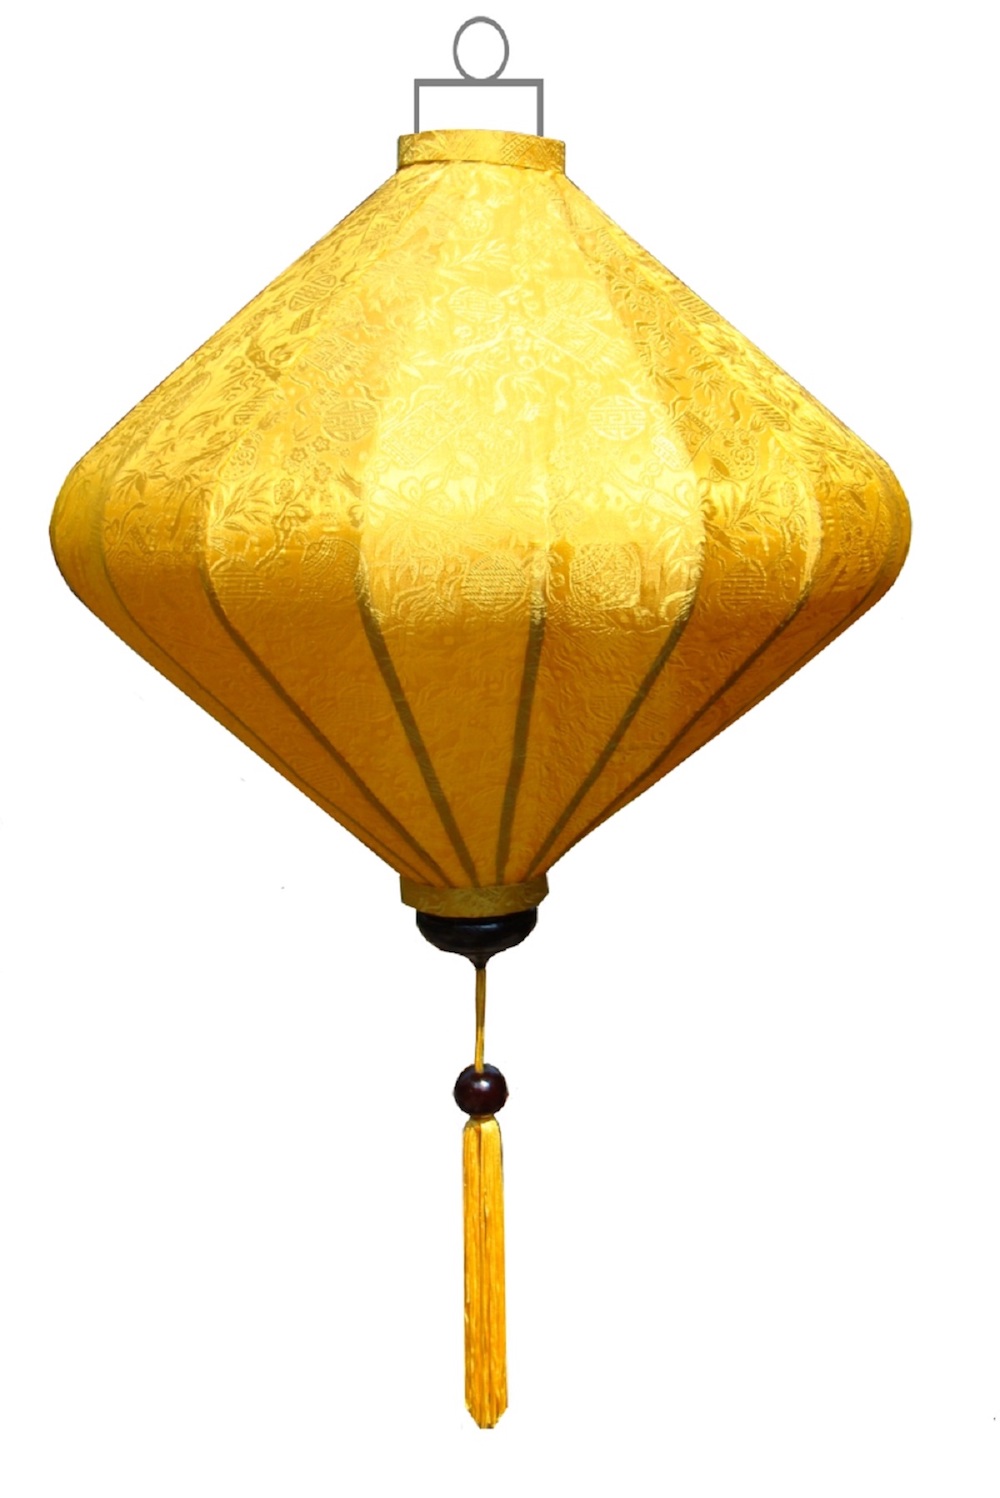 De sfeer van een lampion handgemaakte gele lampion